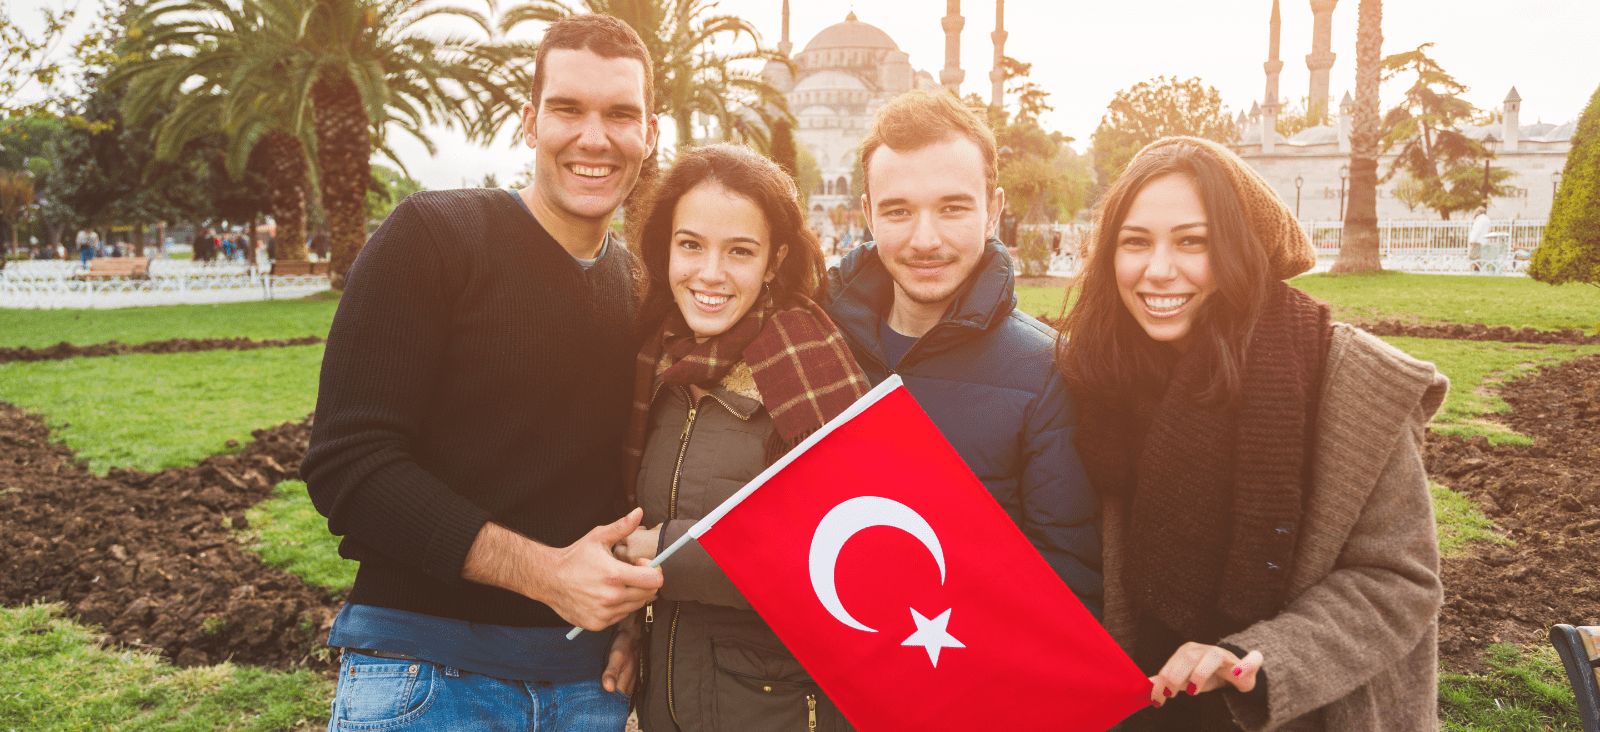 İstanbul'da Türkçe eğitimi, Türkiye'de çalışma ve resmi ve gayri resmi çeviri